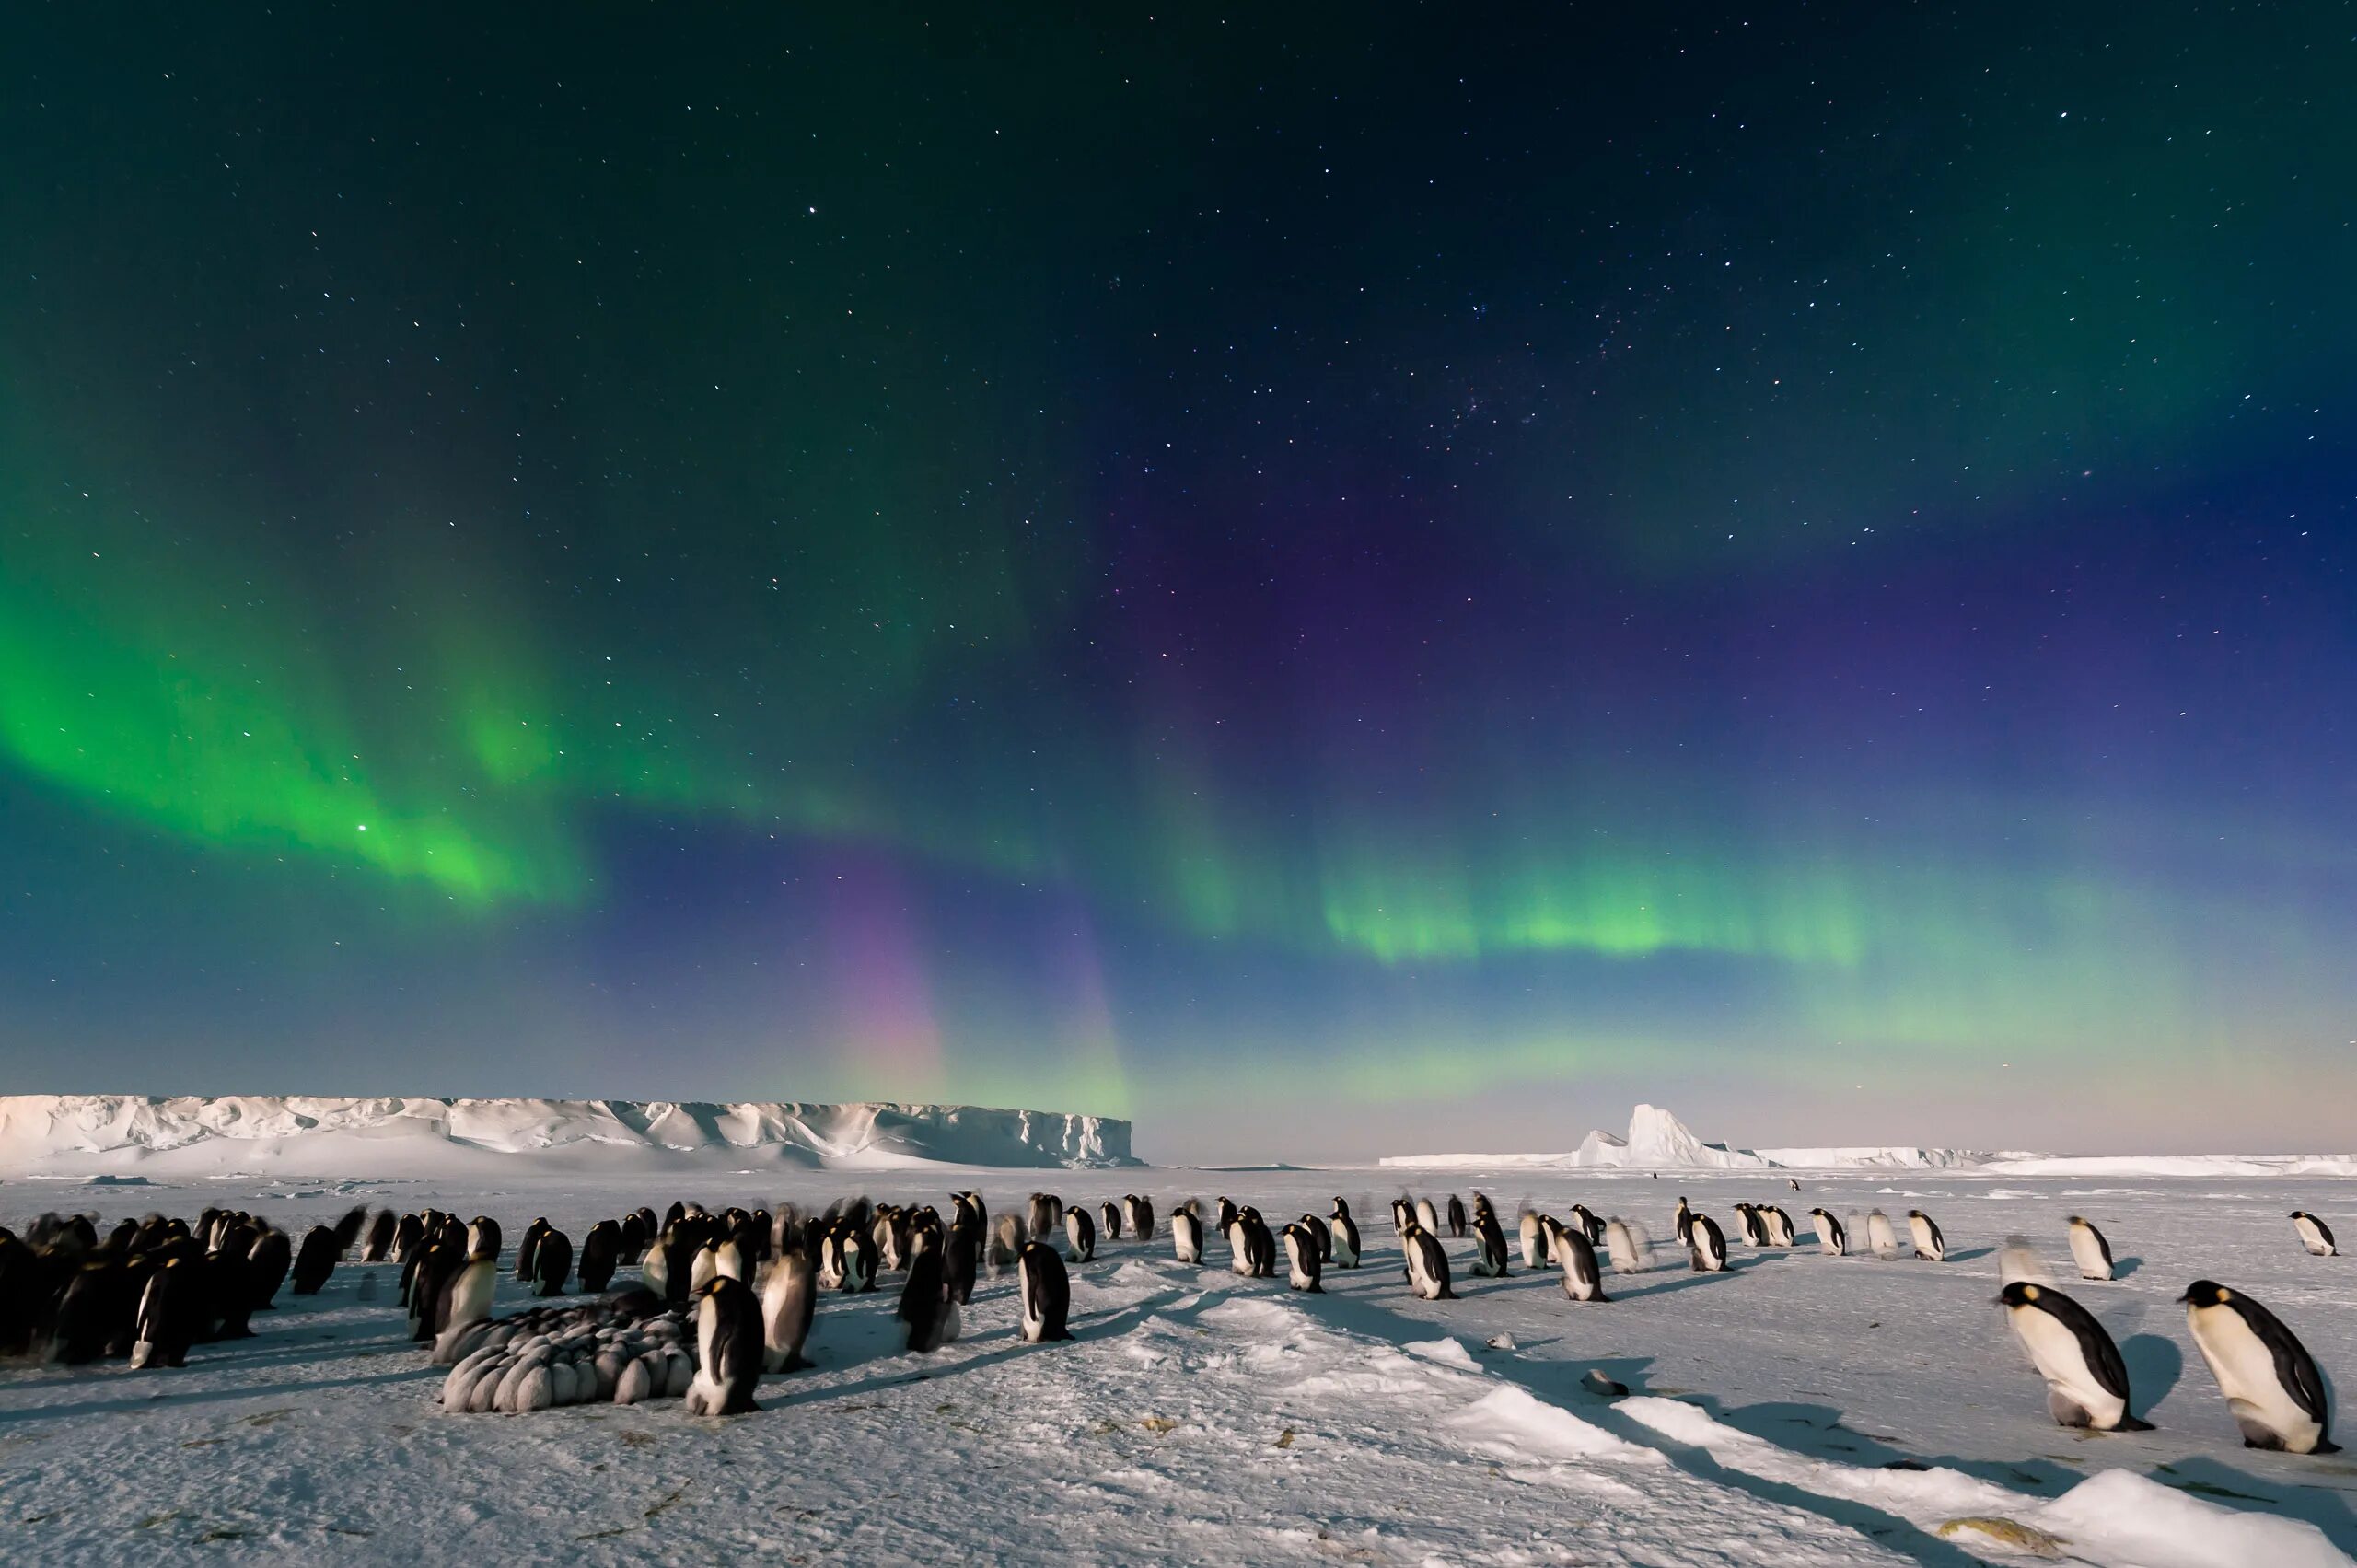 Какая природная зона перед полярным кругом. Антарктида Северное сияние. Южное полярное сияние в Антарктиде. Полярная ночь с северным сиянием в Антарктиде. Северное сияние в Антарктике.